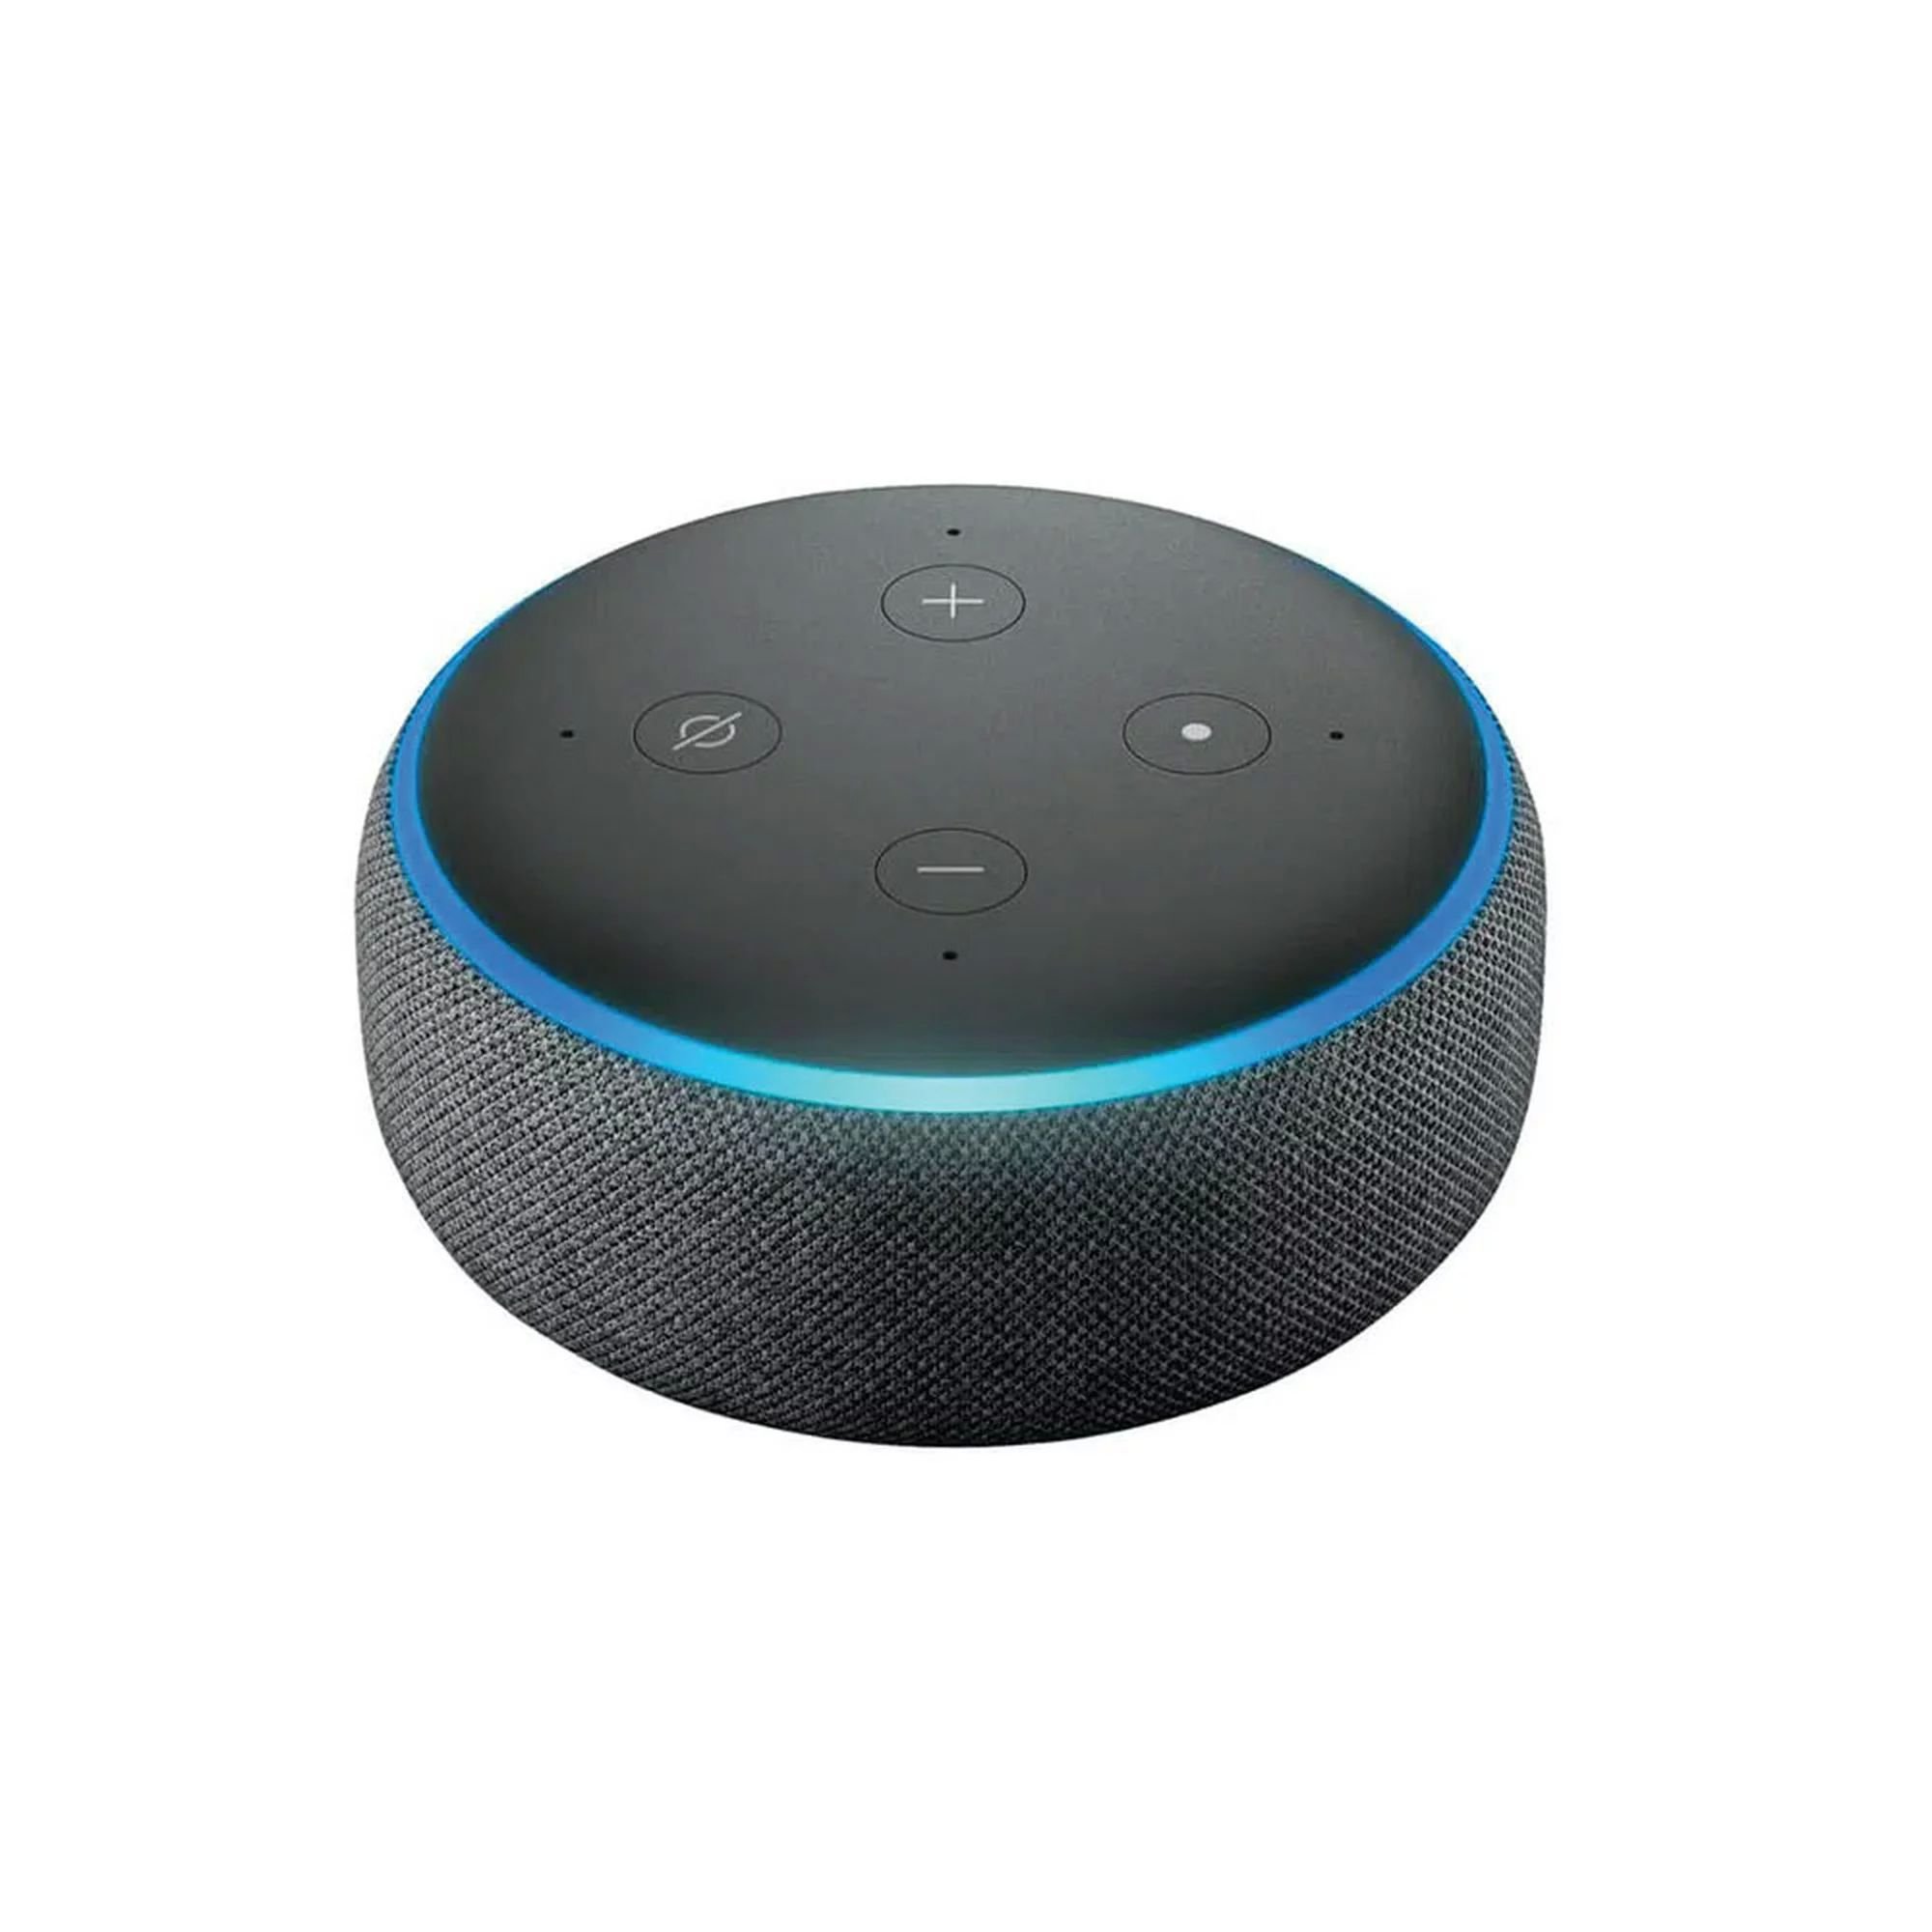 Echo Dot (3ra generación) - Bocina inteligente con Alexa, negro